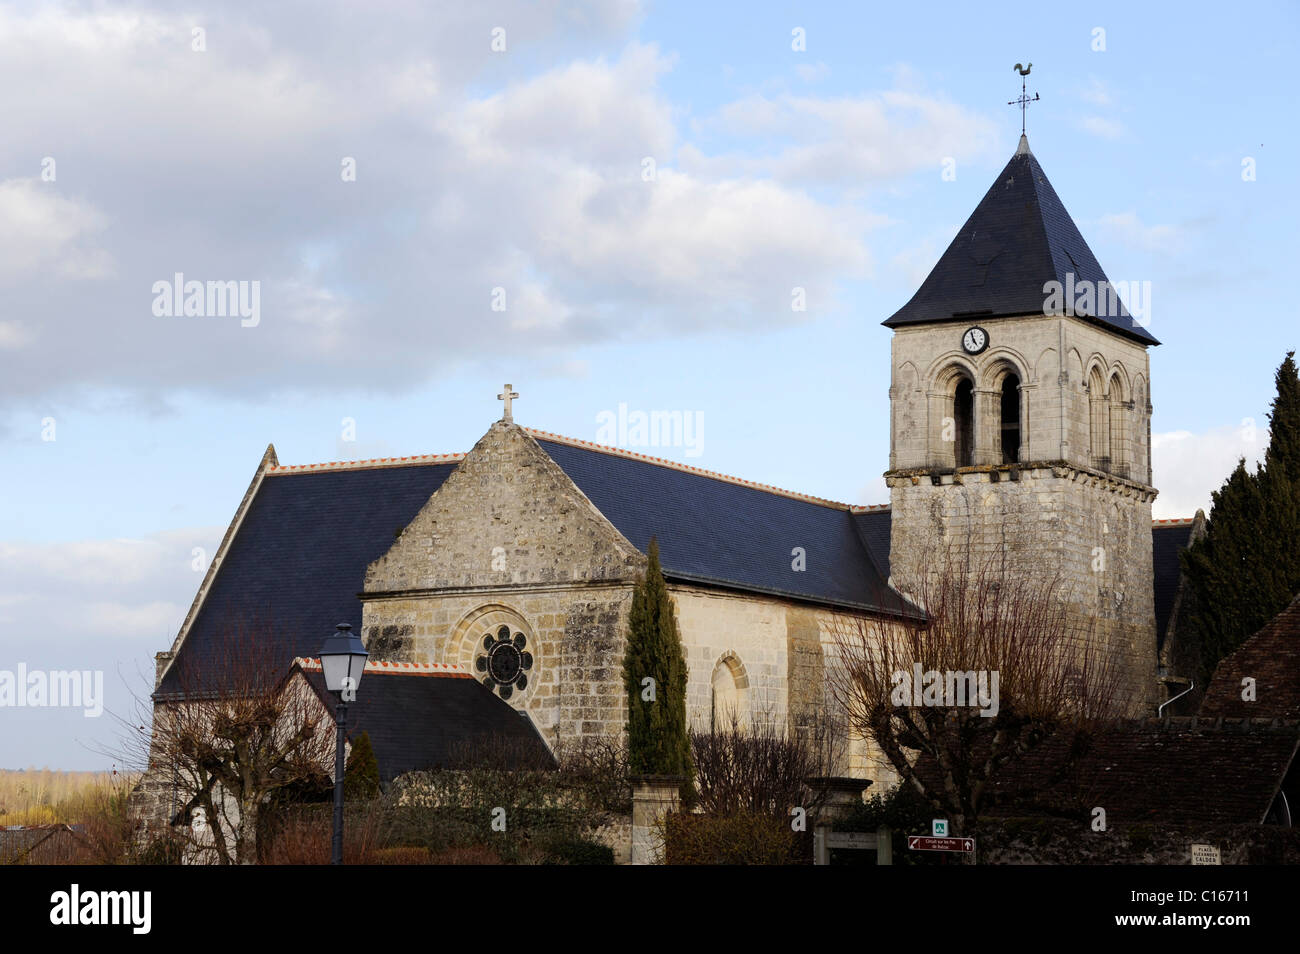 Sache,luogo Alexander Calder,Indre River Valley,della Valle della Loira,Indre-et-Loire,Francia,l'Europa, la chiesa romana Foto Stock